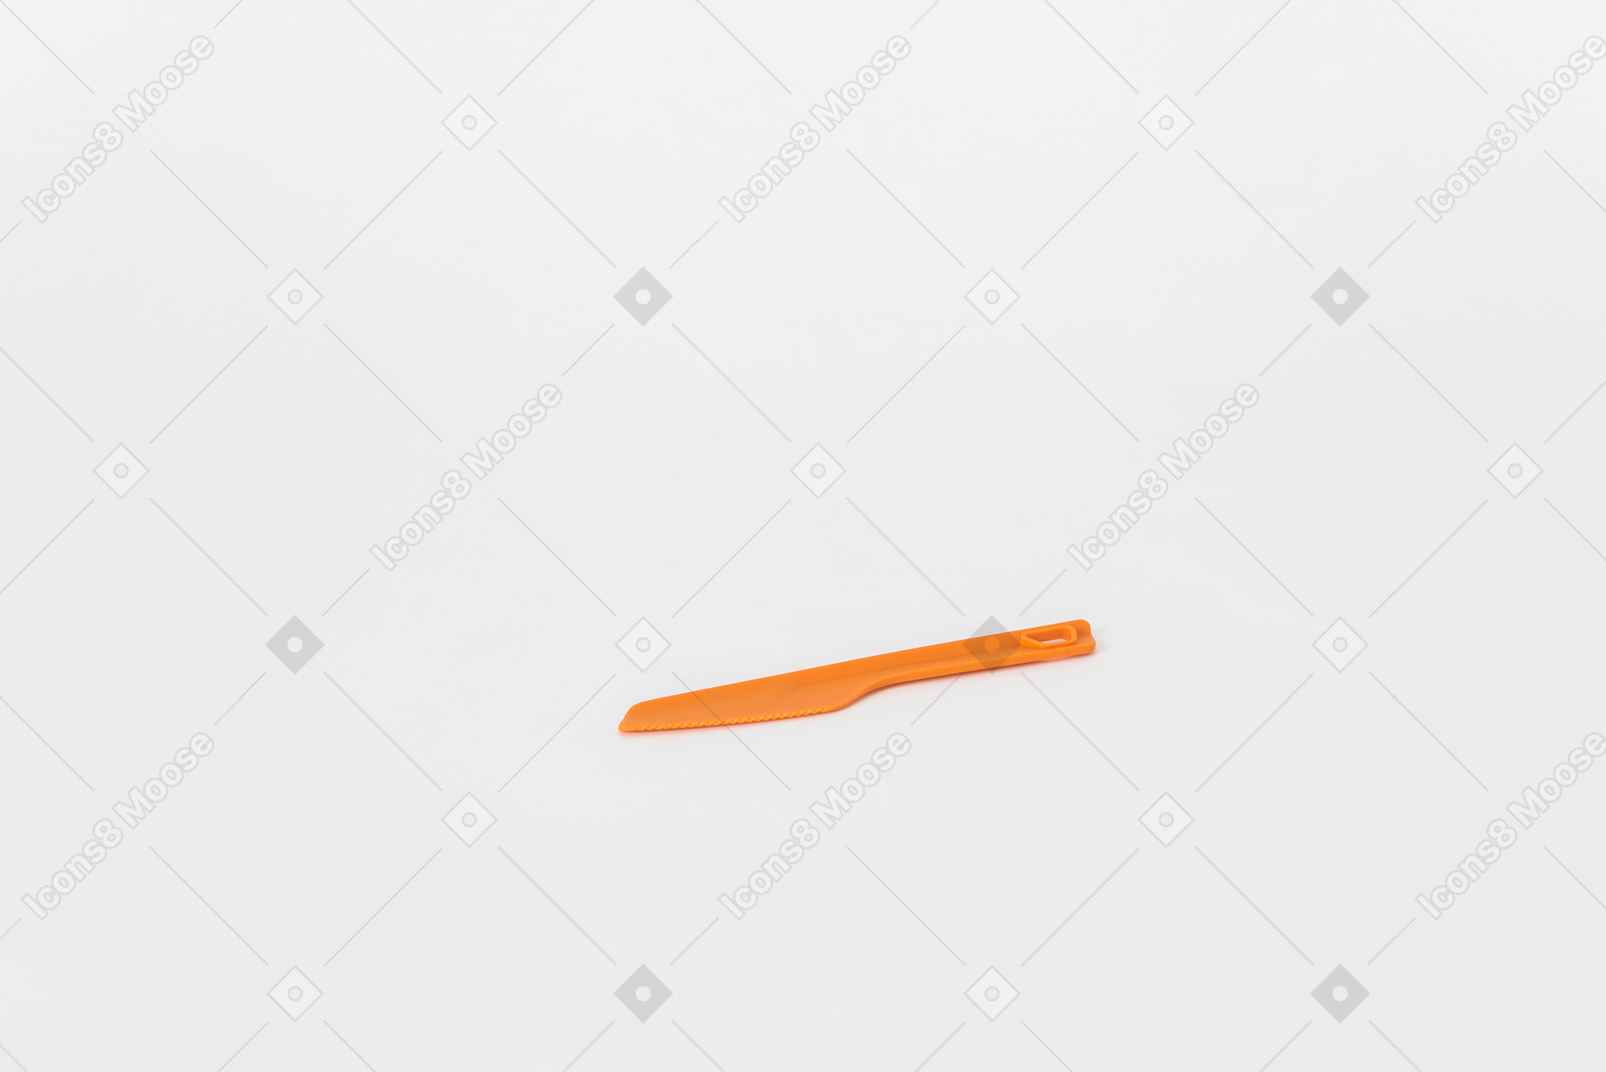 Faca de cozinha laranja de plástico em um fundo branco